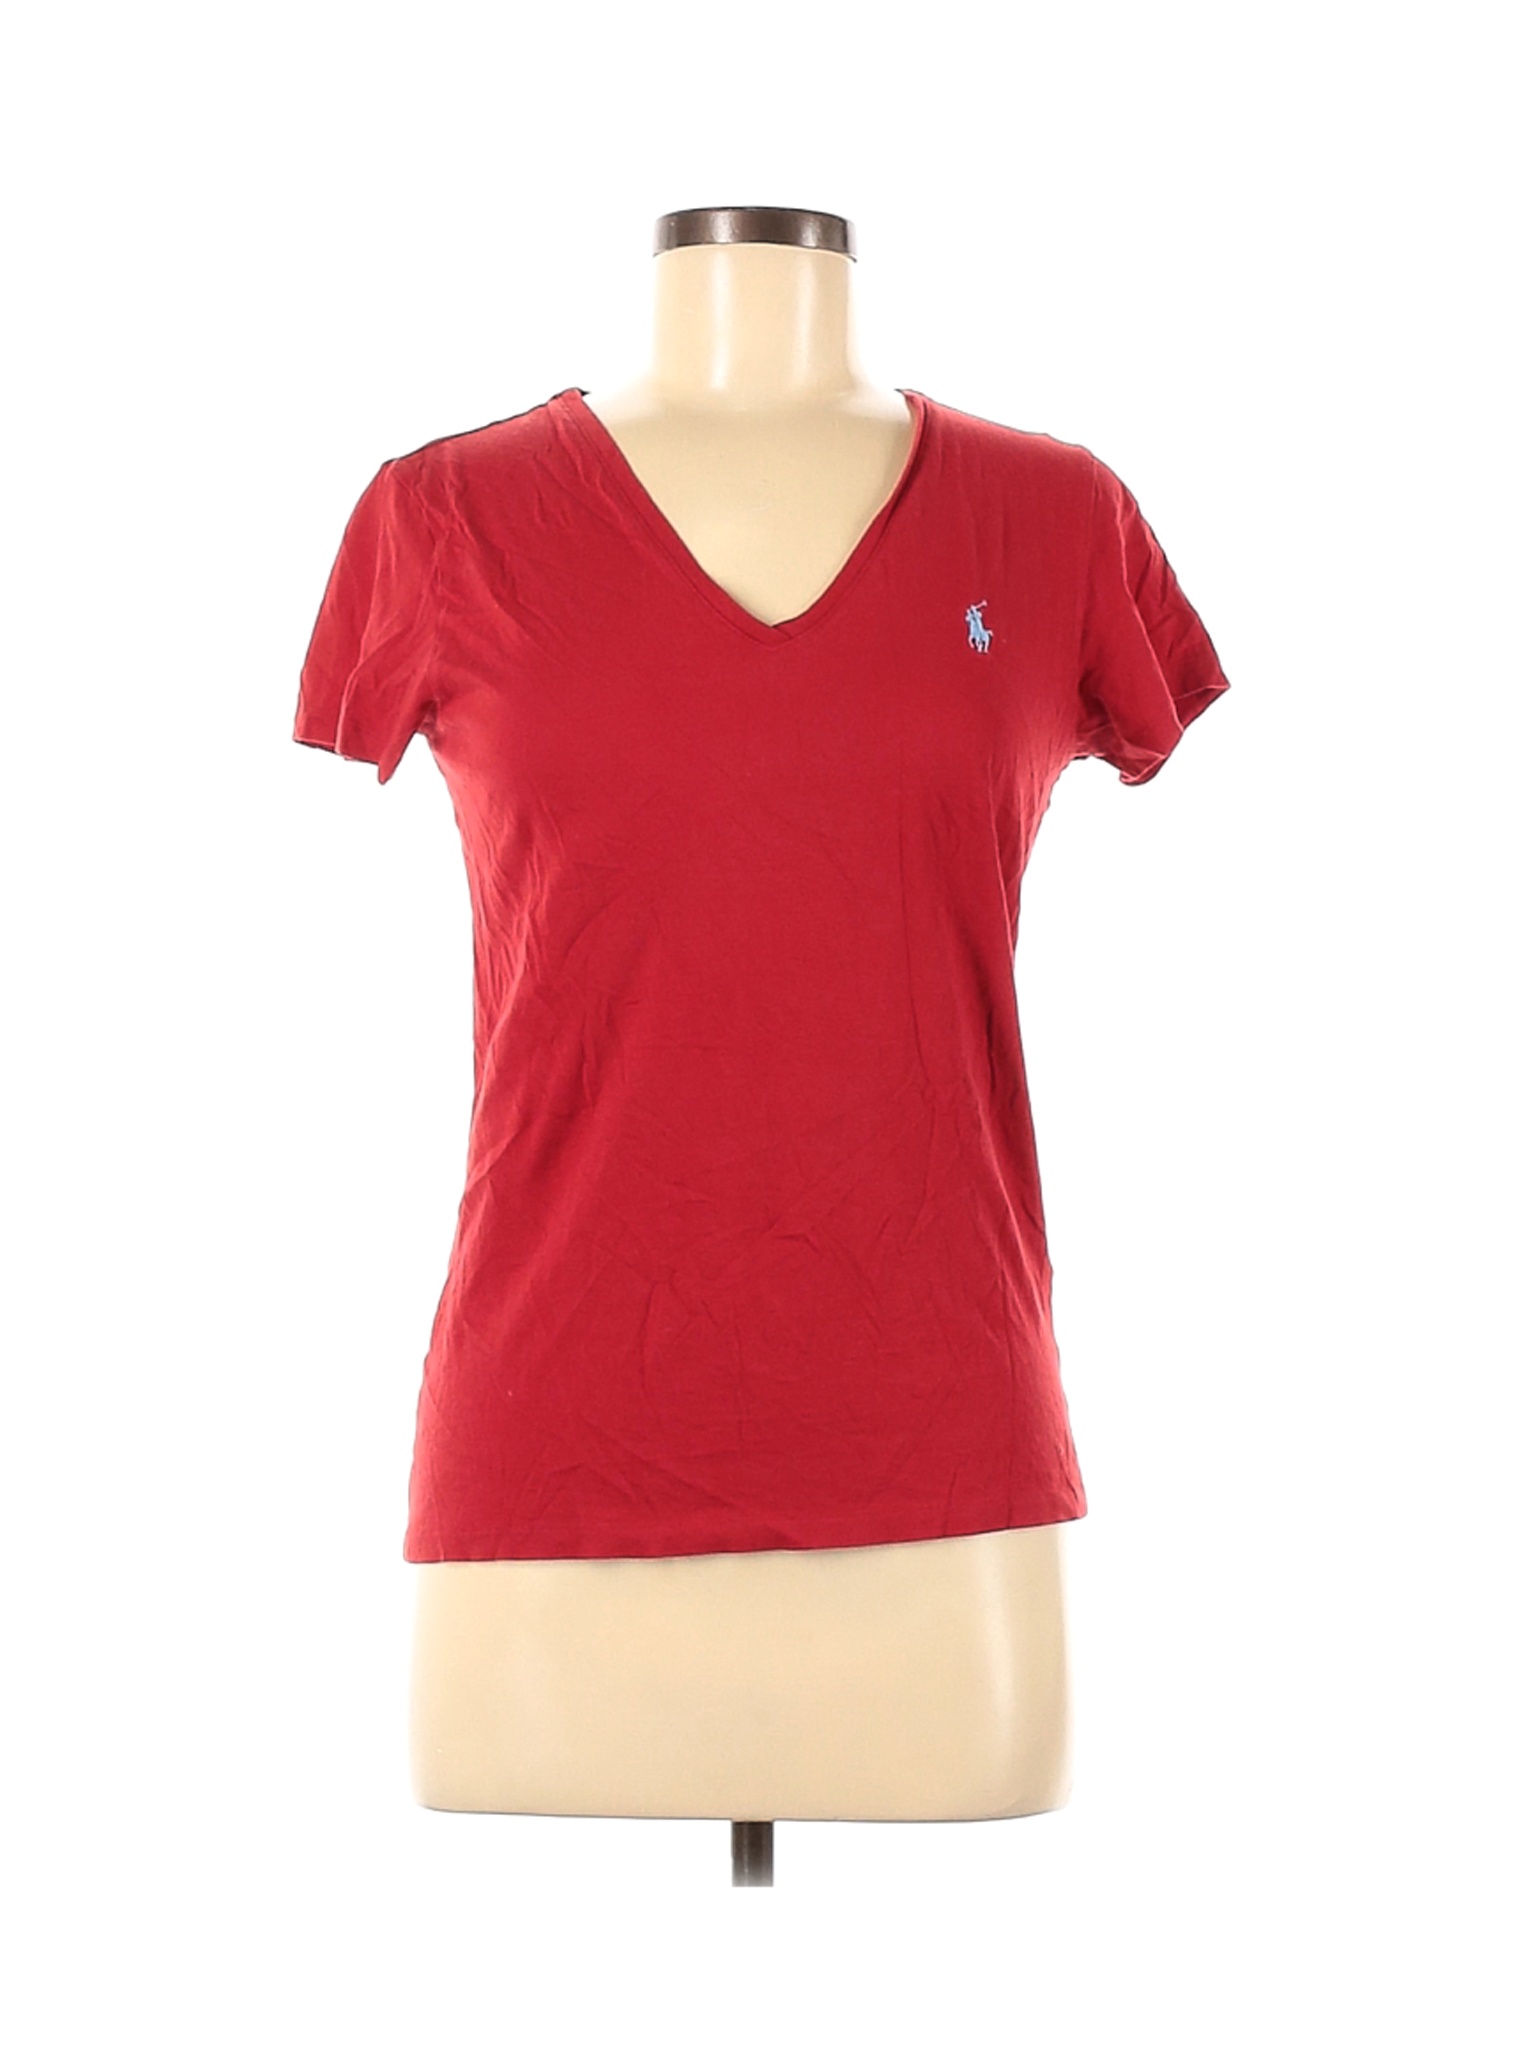 Ralph Lauren Sport Women Red Short Sleeve T-Shirt M | eBay